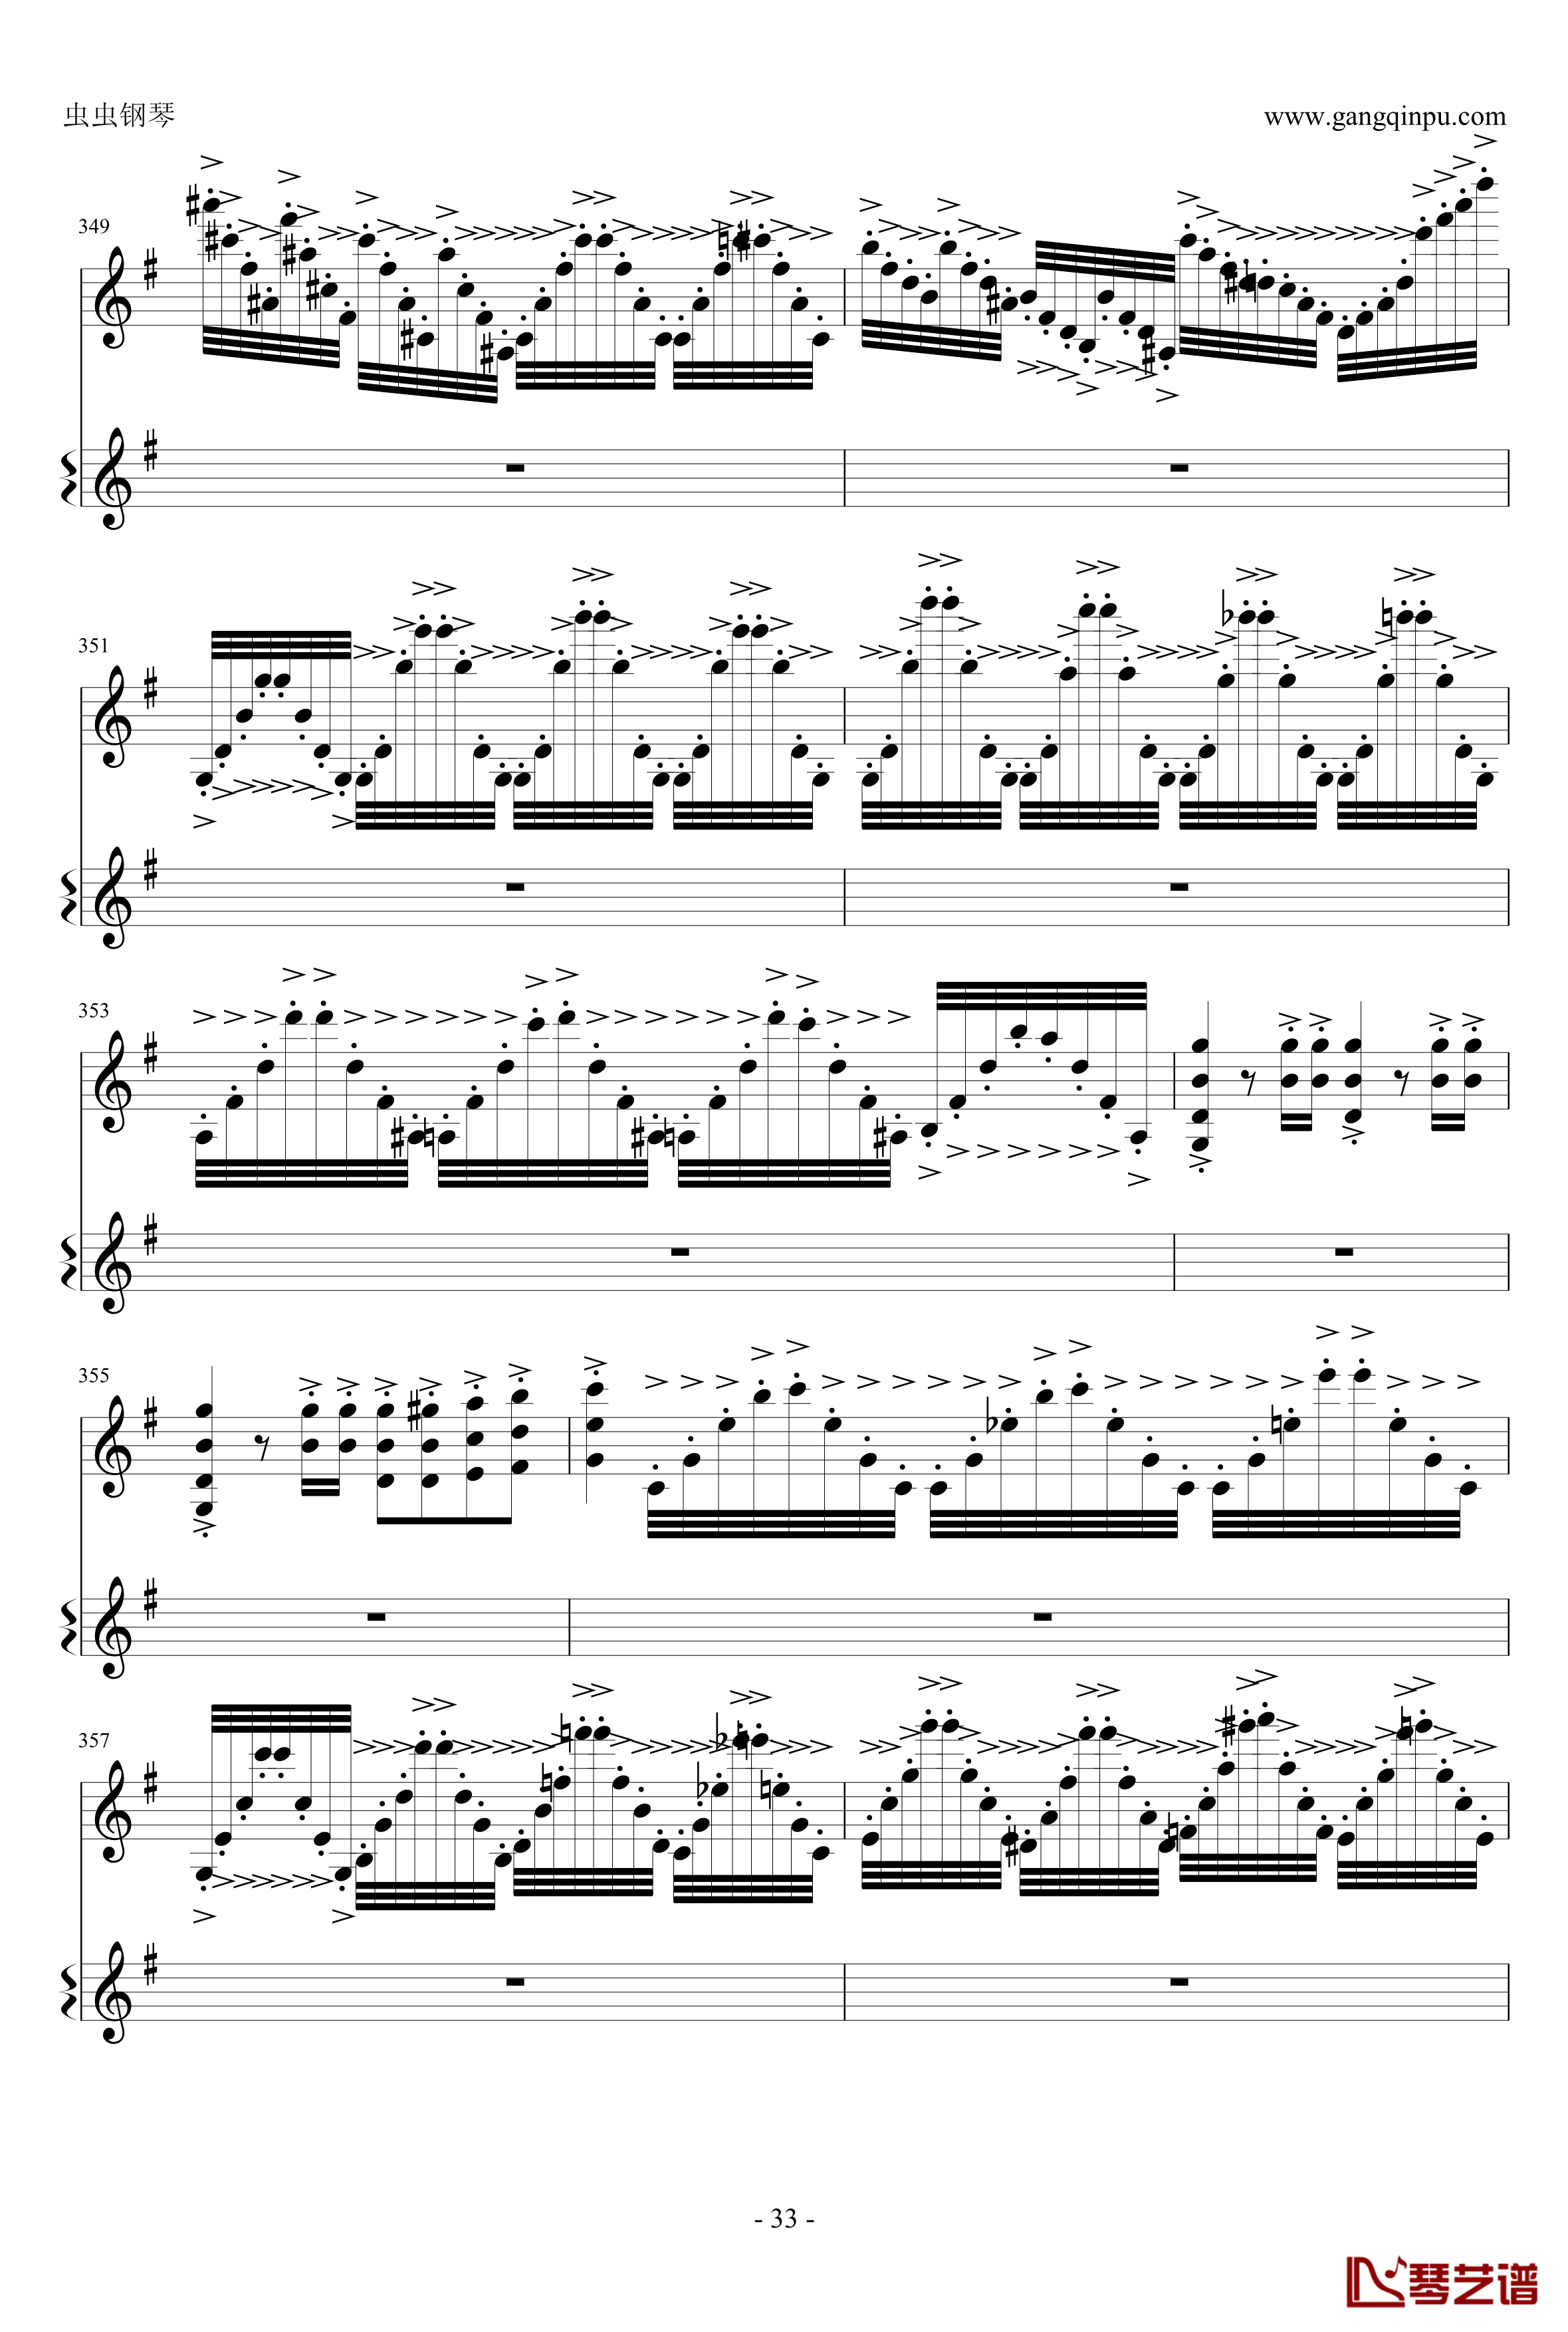 意大利国歌钢琴谱-变奏曲修改版-DXF33